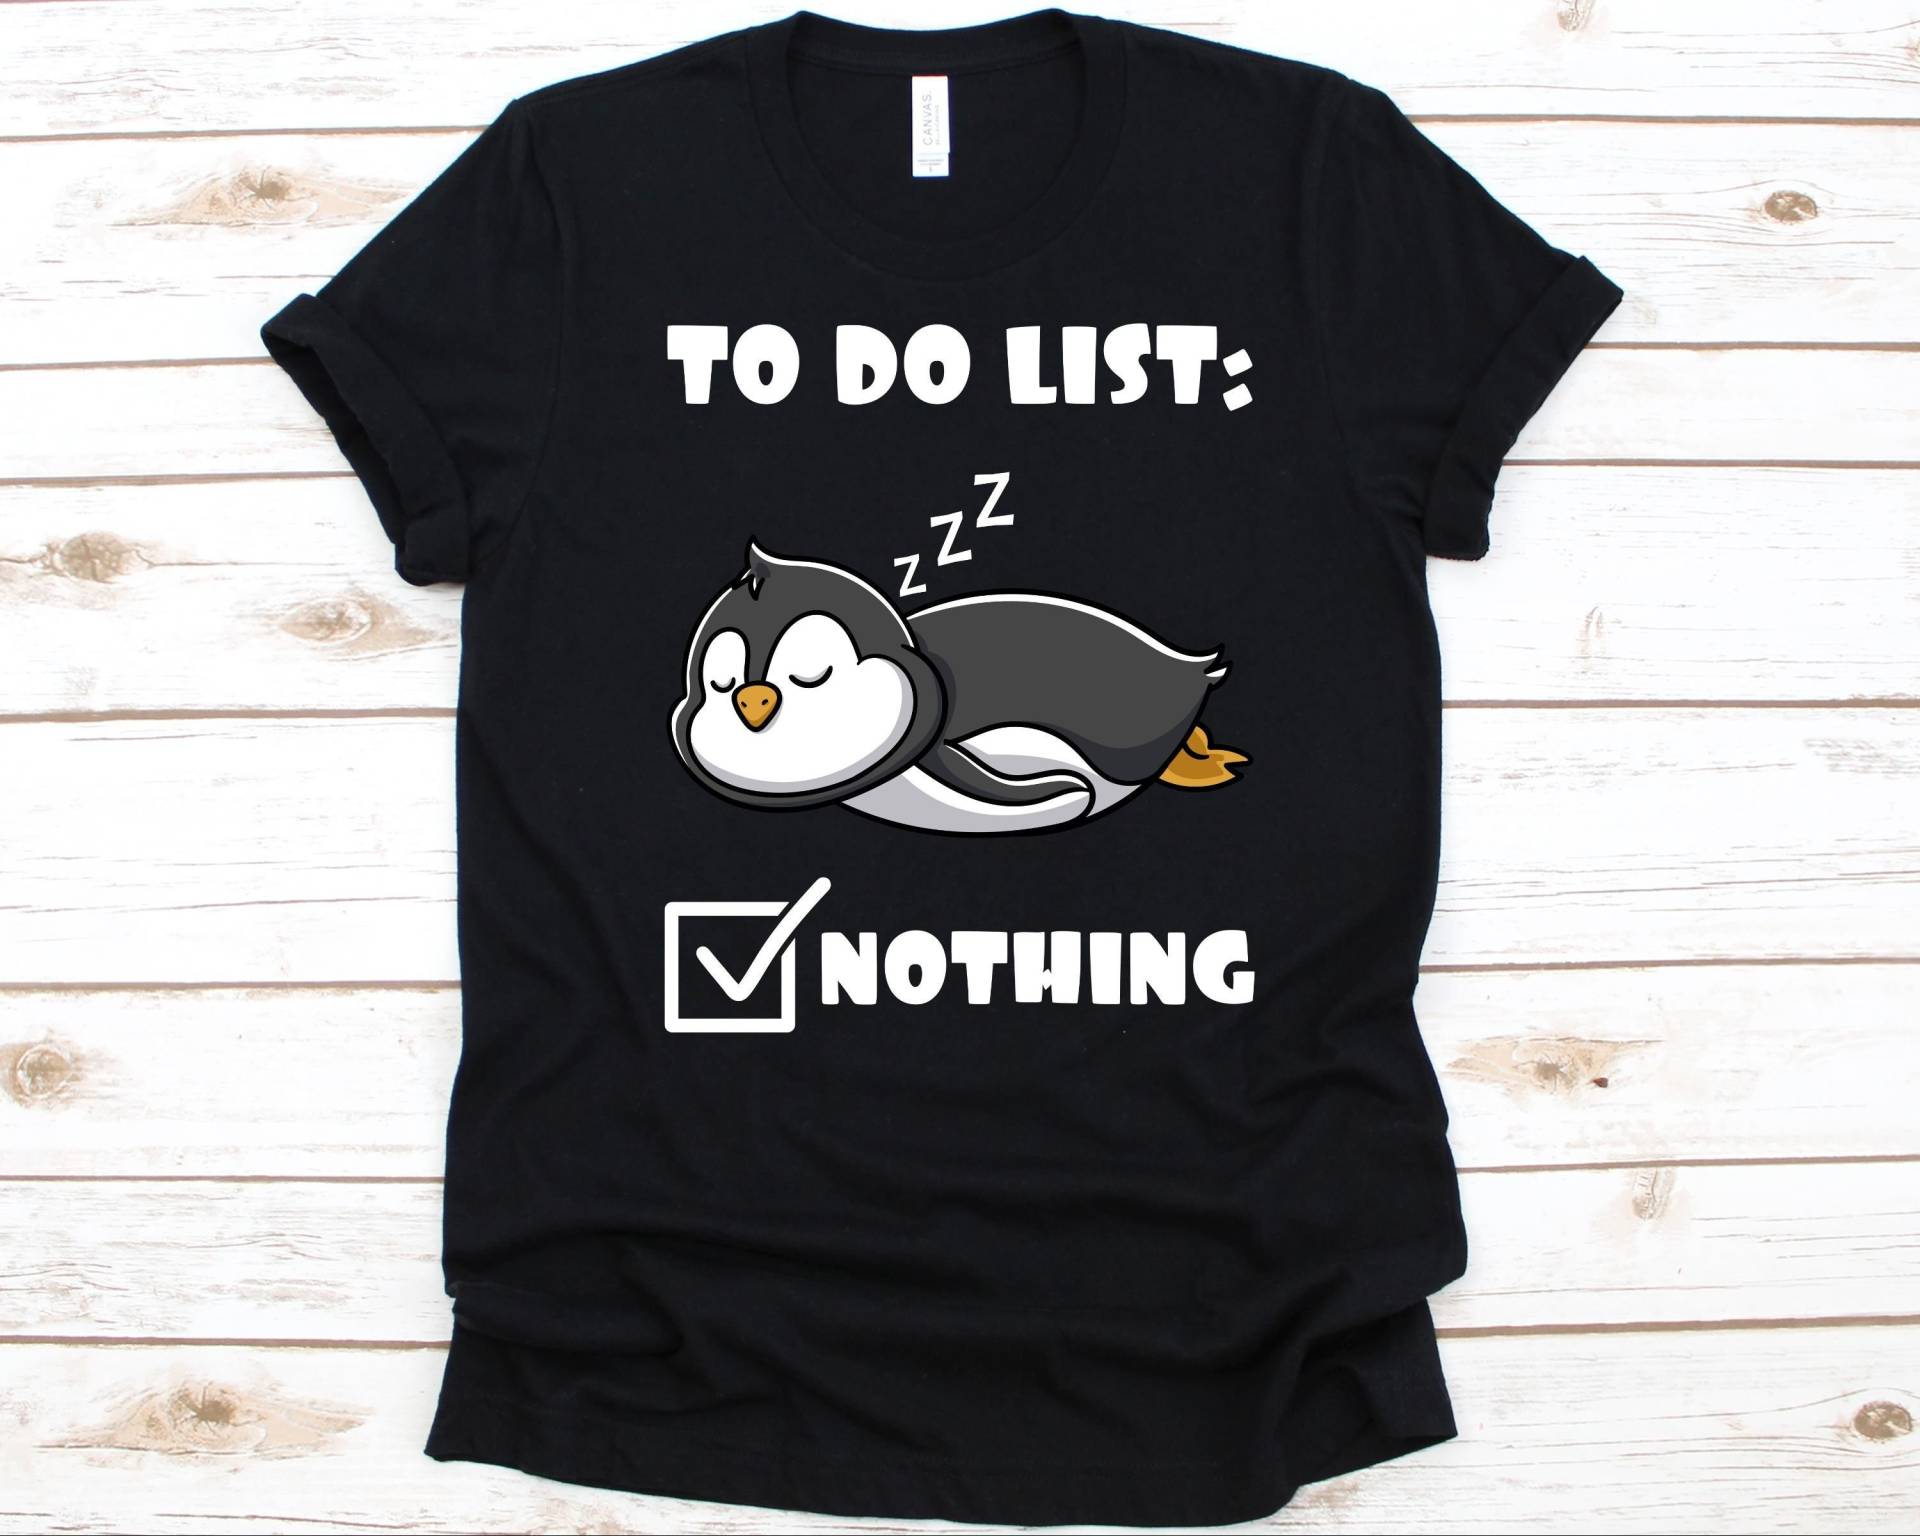 To Do List Nothing Shirt, Pinguin T-Shirt Für Männer Und Frauen, Liebhaber Wasser Flugloser Vogel, Pinguinshirt, Schlafende Pinguine von AbbysDesignFactory